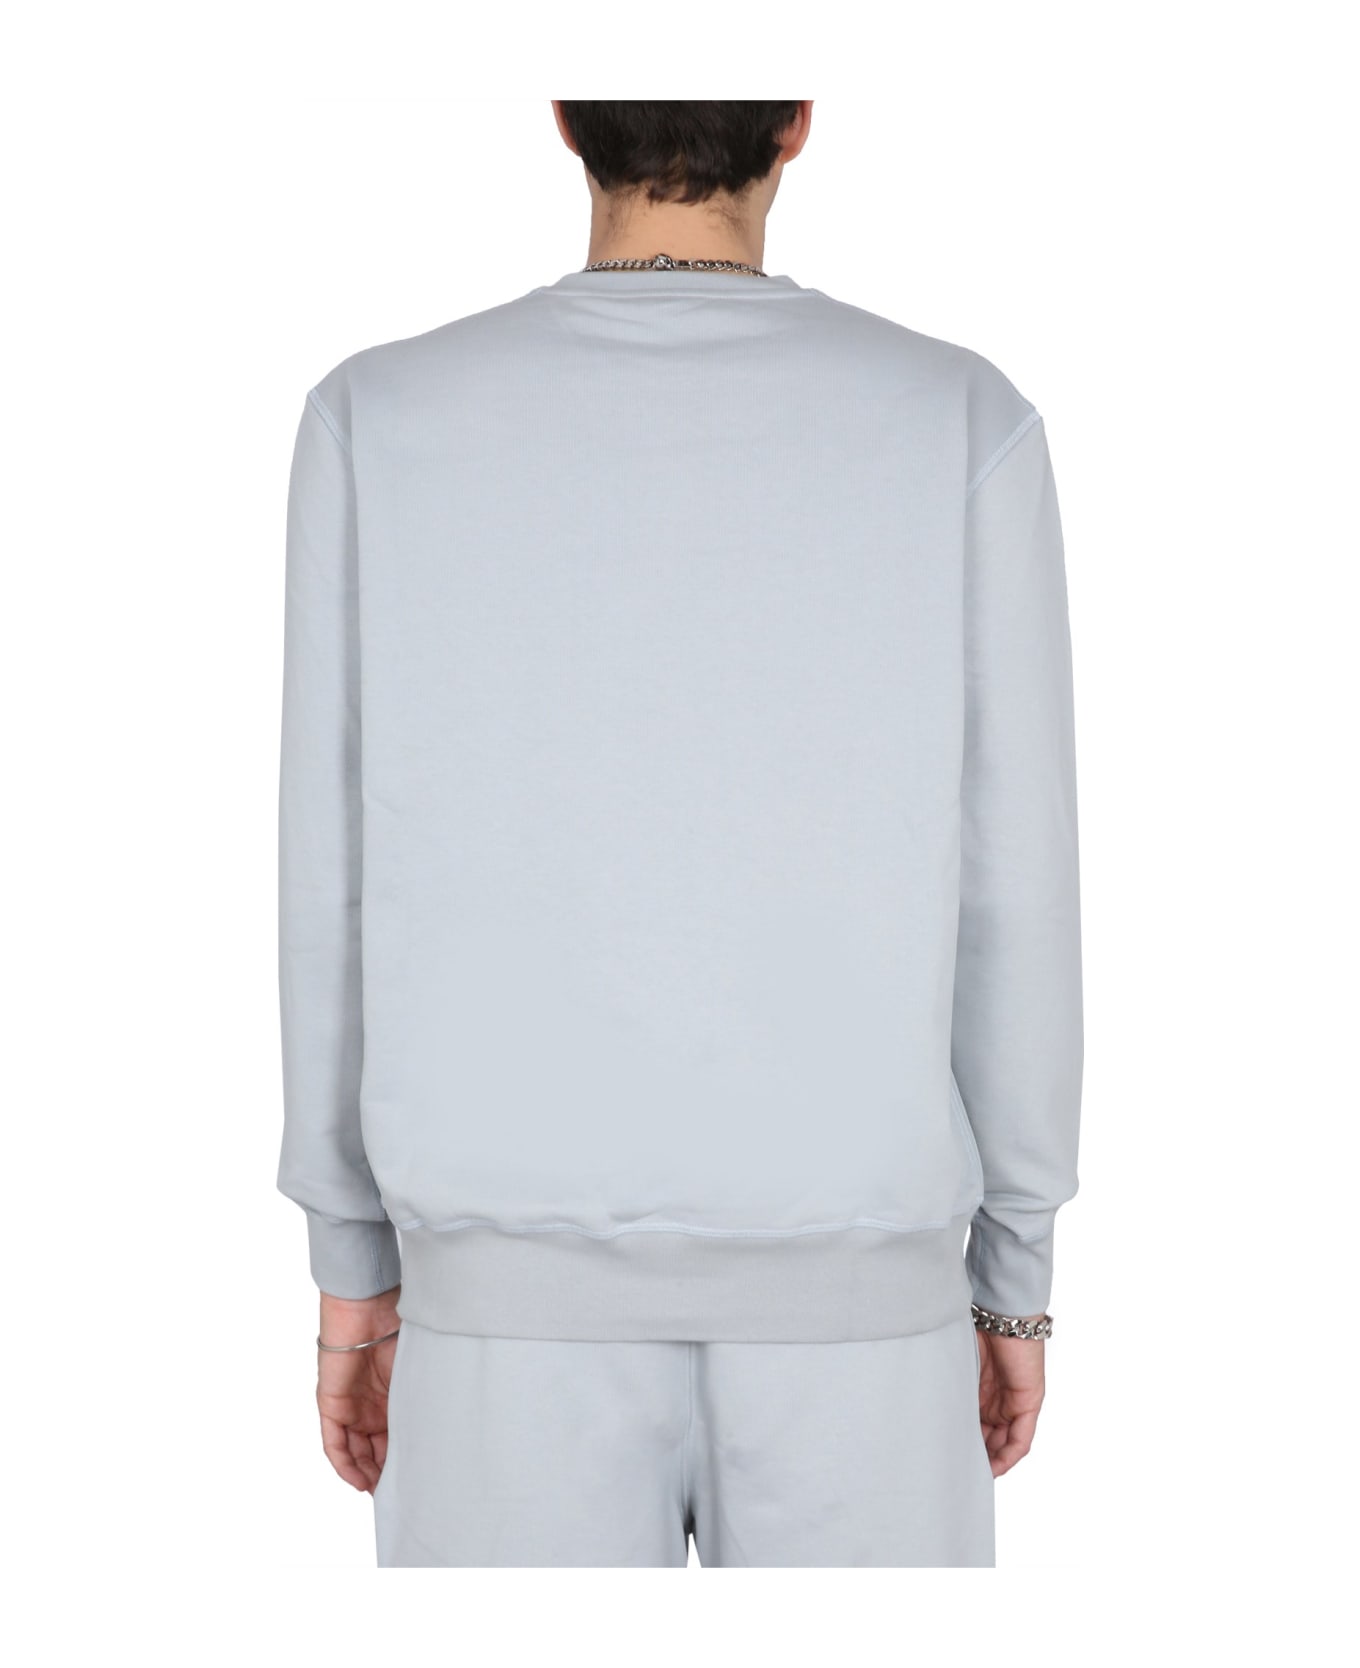 Alexander McQueen Logo Detail Cotton Sweatshirt - Light Blue